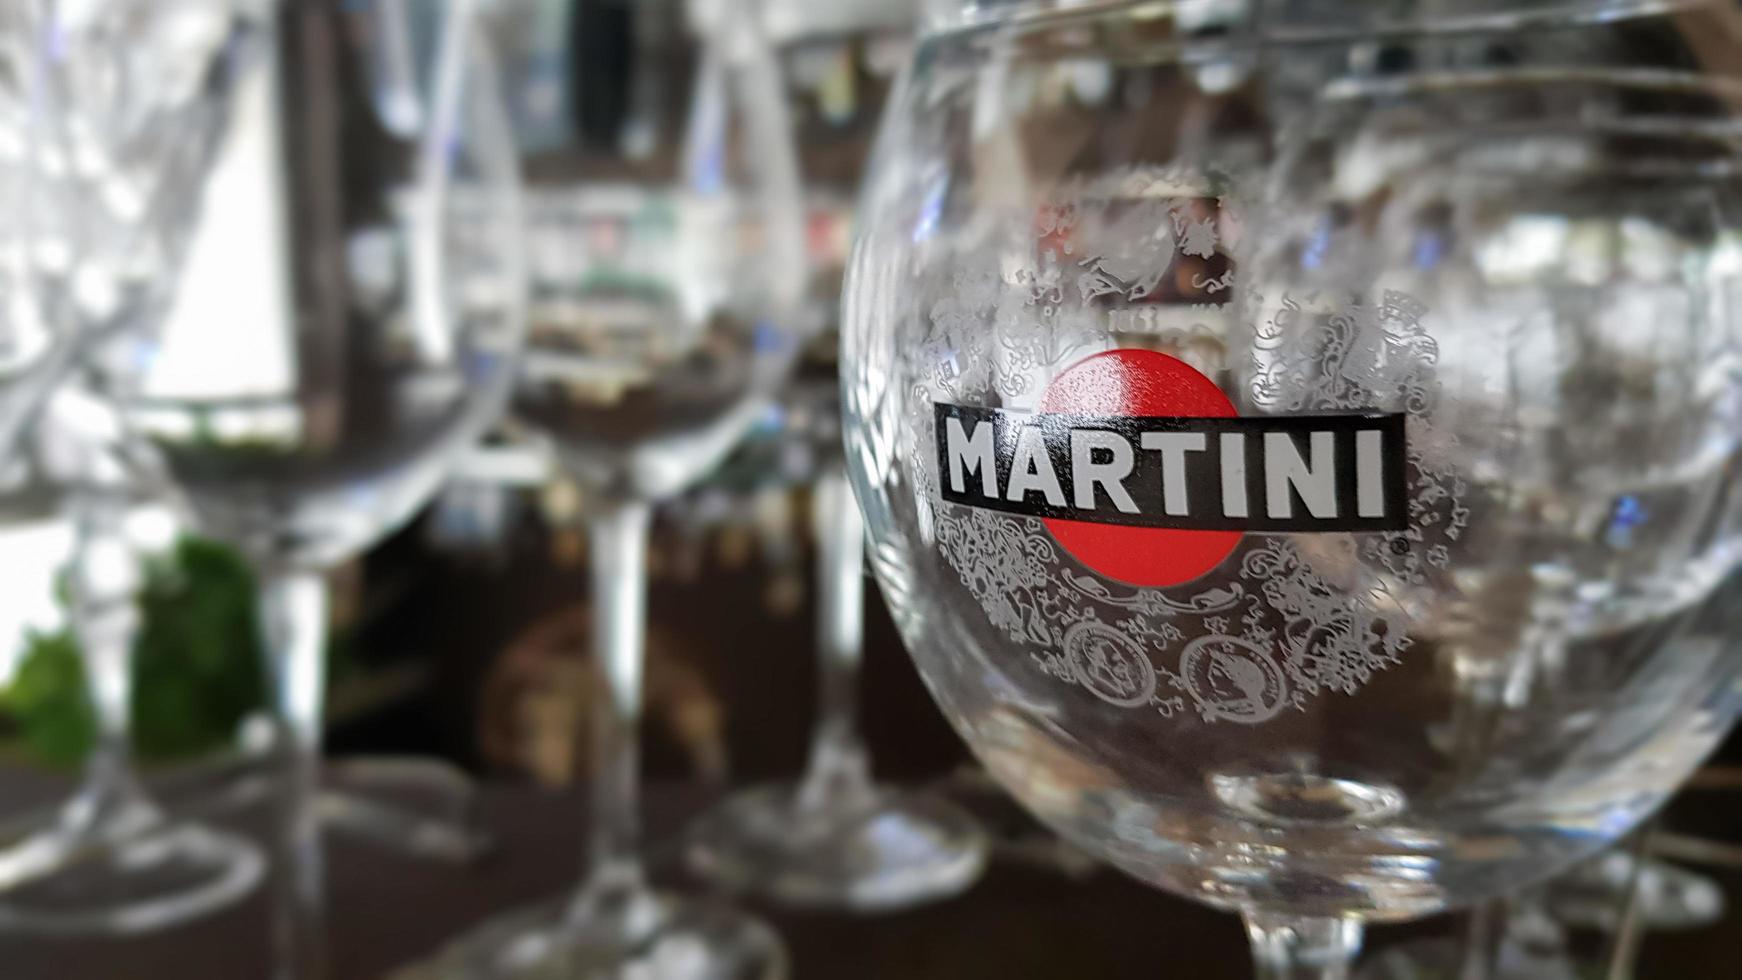 Martini-Gläser stehen in der Bar. die Aufschrift auf dem Glas und der Logo-Martini-Aufkleber. eine Marke von in Italien hergestellten Wermut und Schaumweinen. italien, turin - 1. oktober 2020. foto